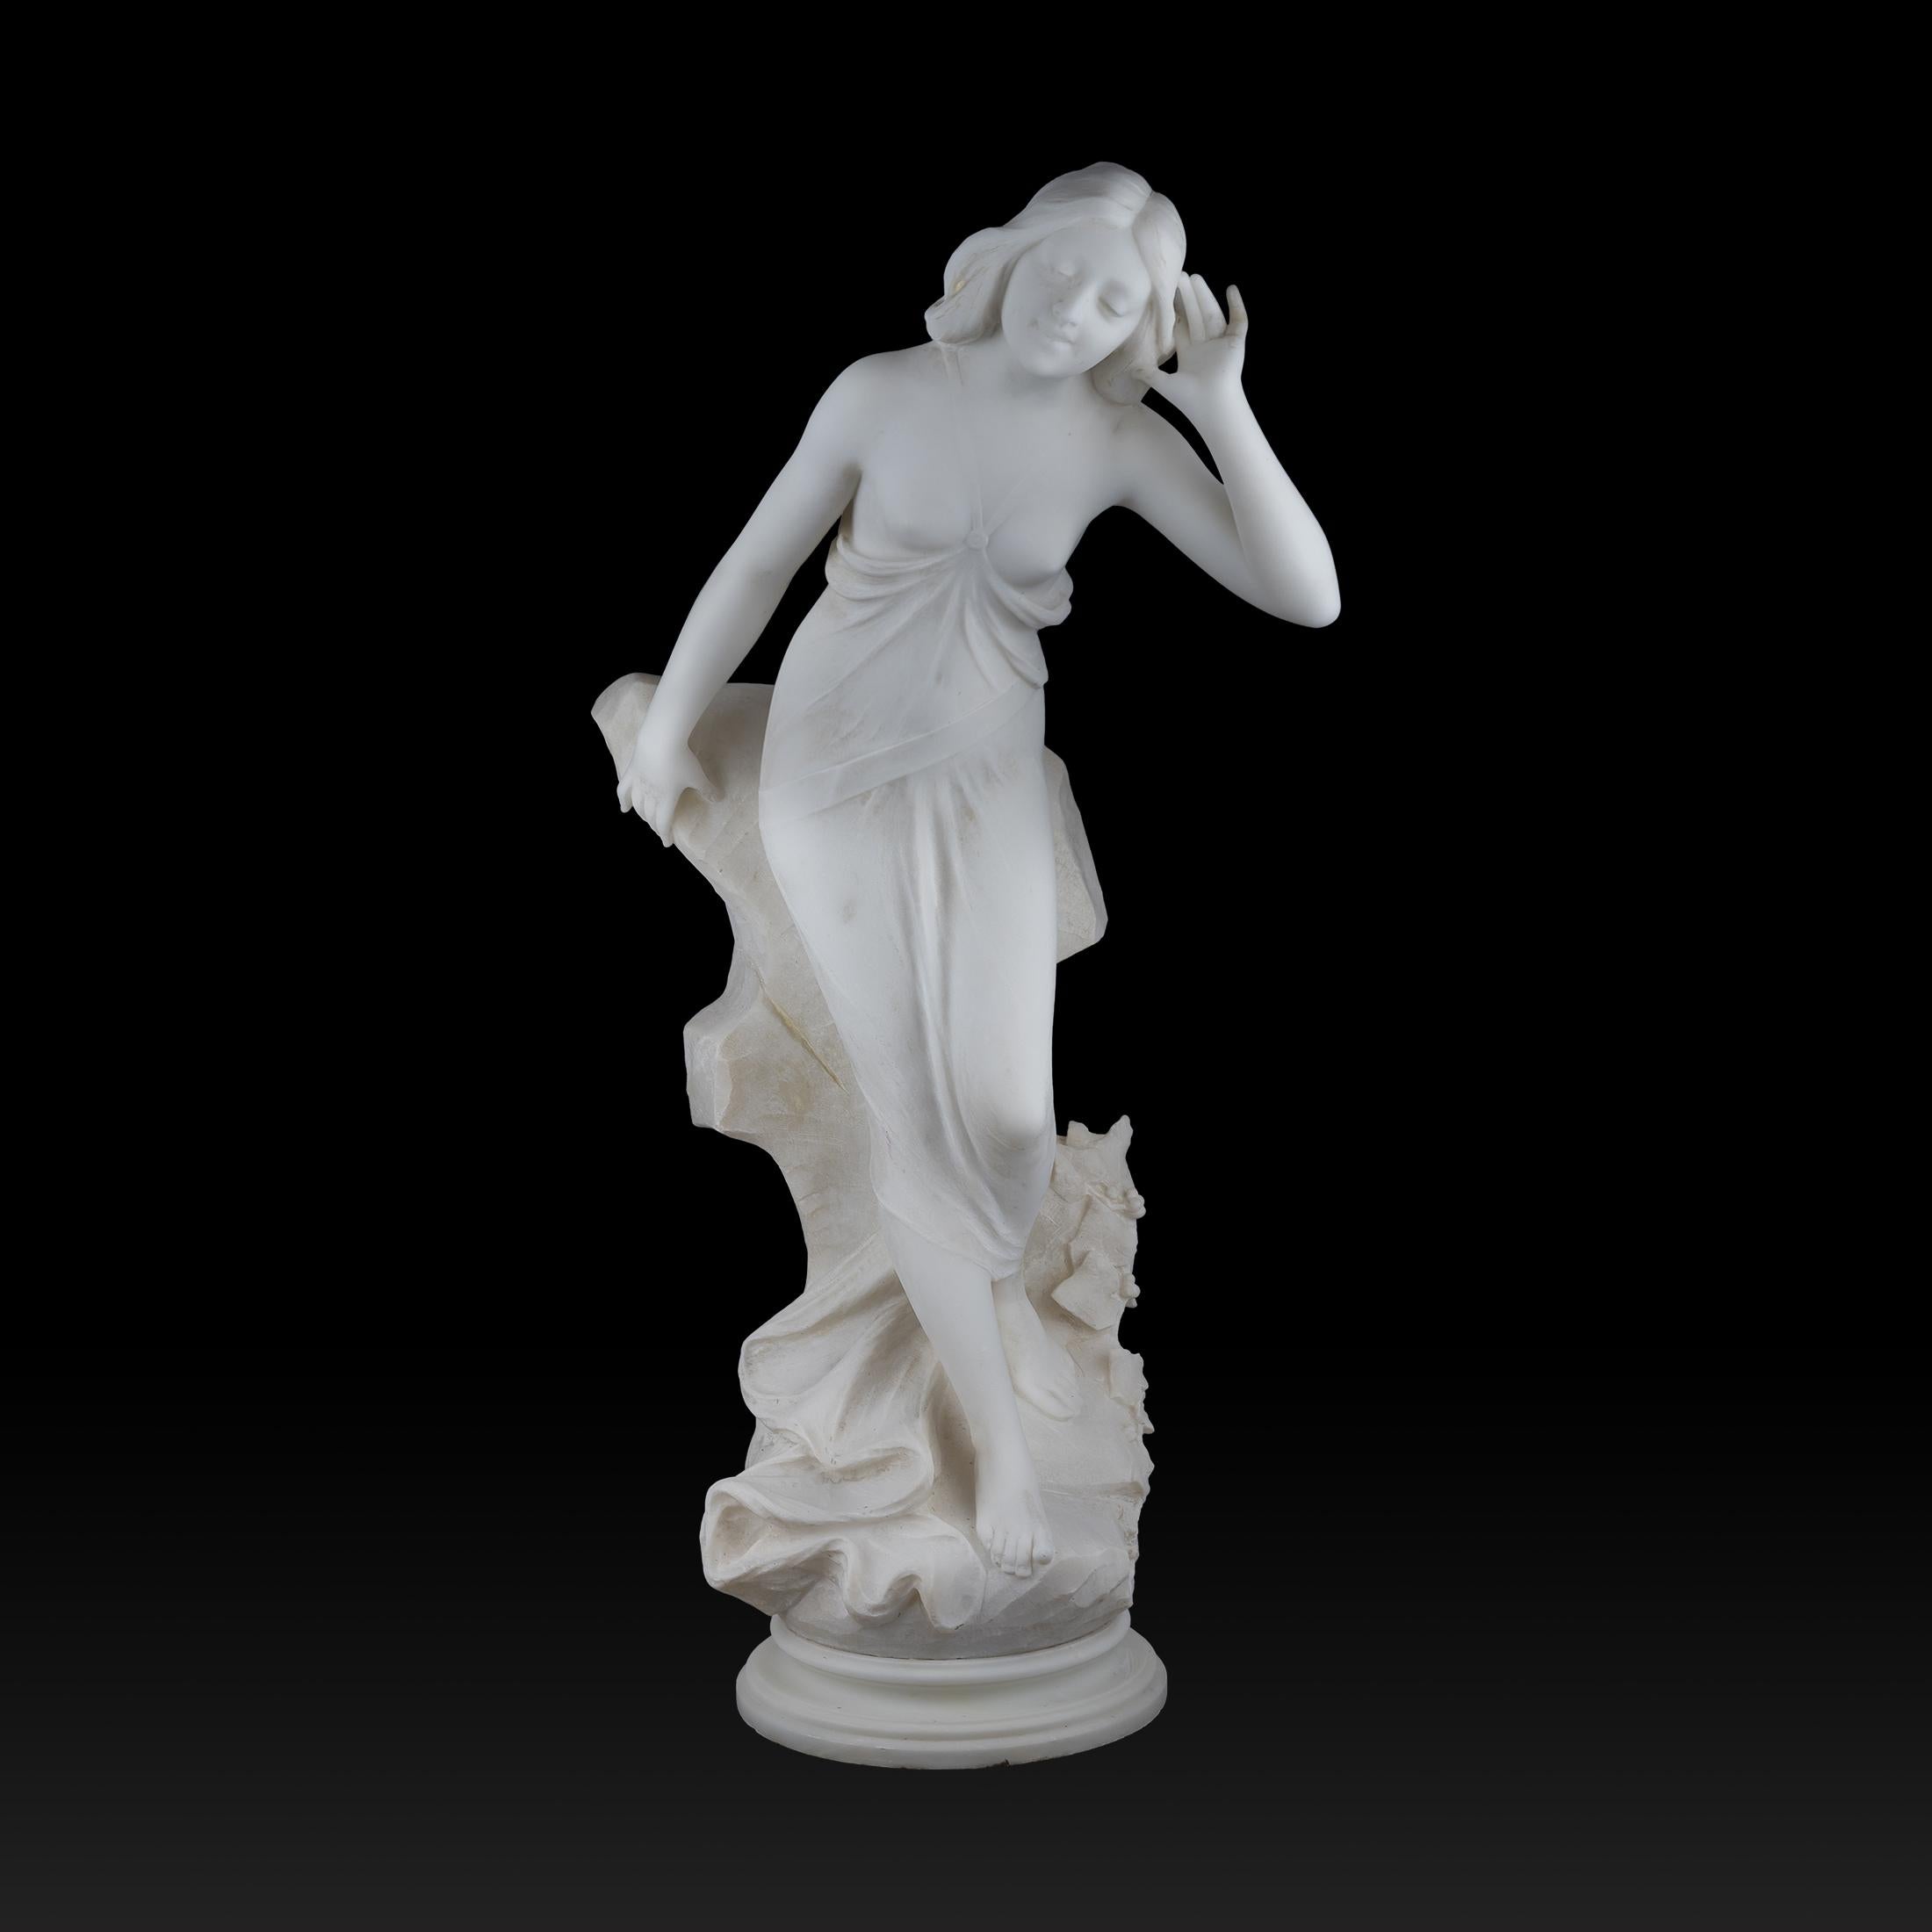 A. Batacchi (XIX-XX) Figurative Sculpture - White Marble Sculpture Statue of a Nymph